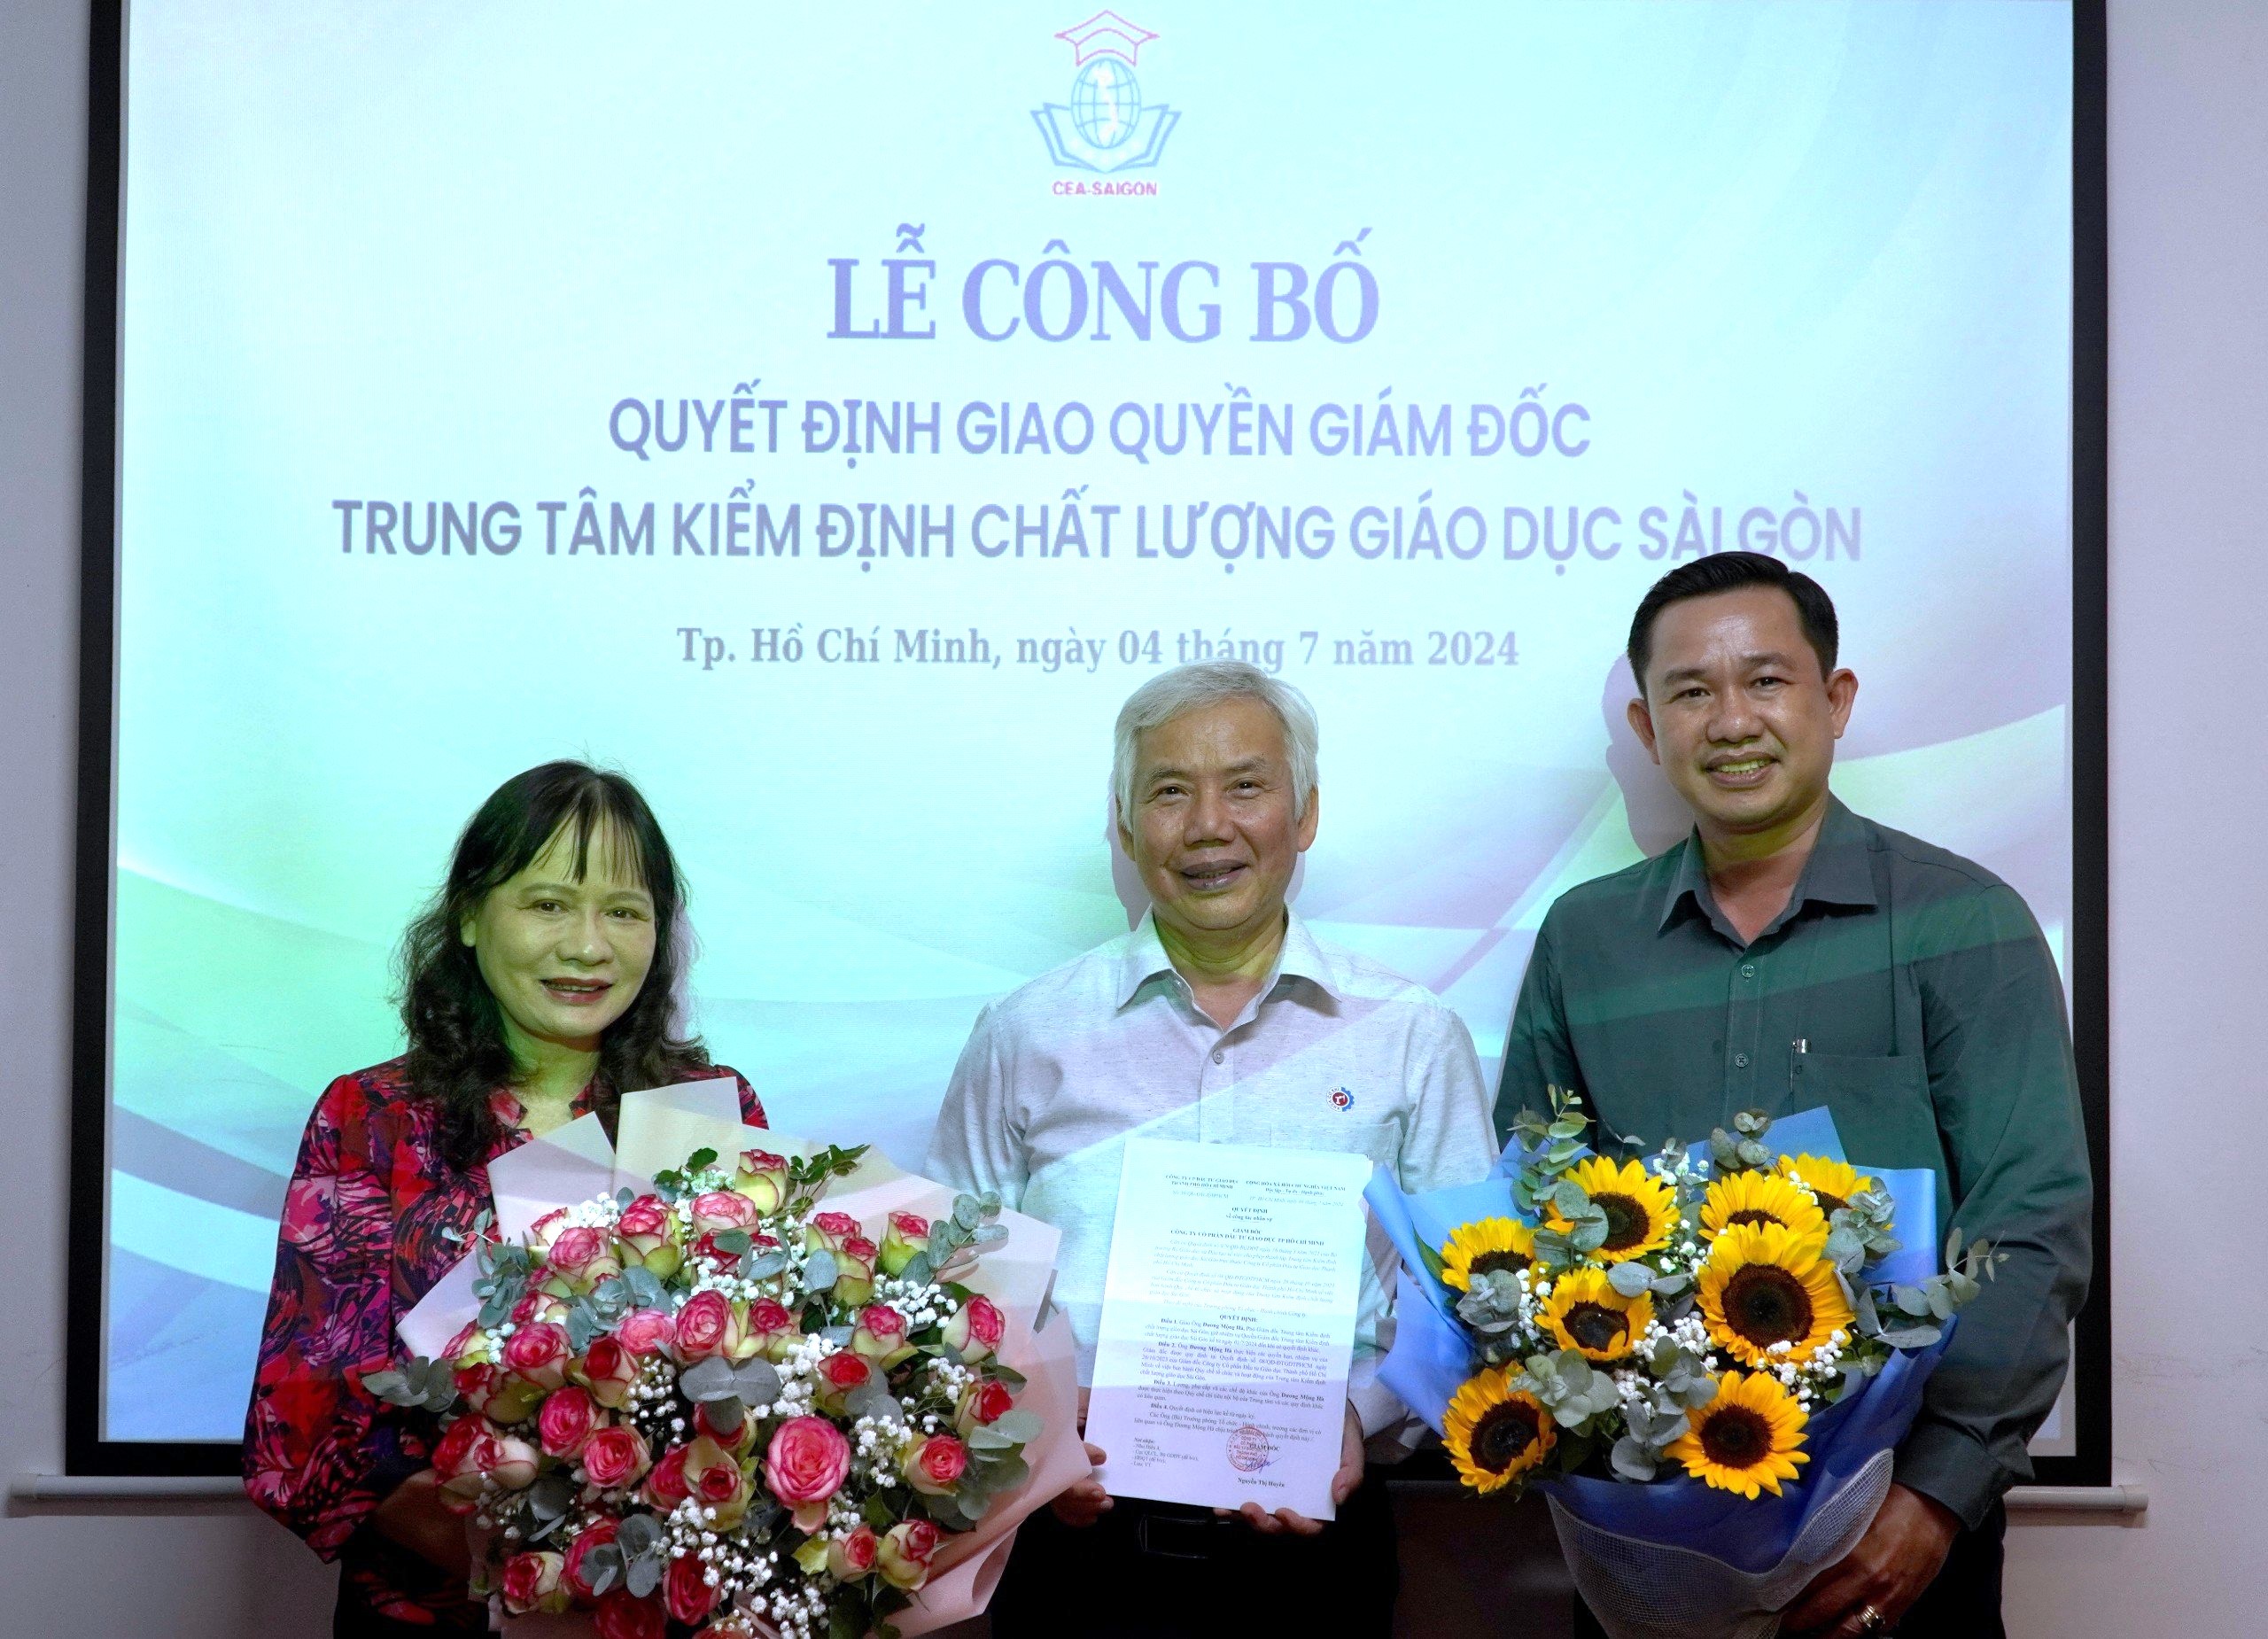 TS. Dương Mộng Hà giữ Quyền Giám đốc Trung tâm Kiểm định chất lượng giáo dục Sài Gòn